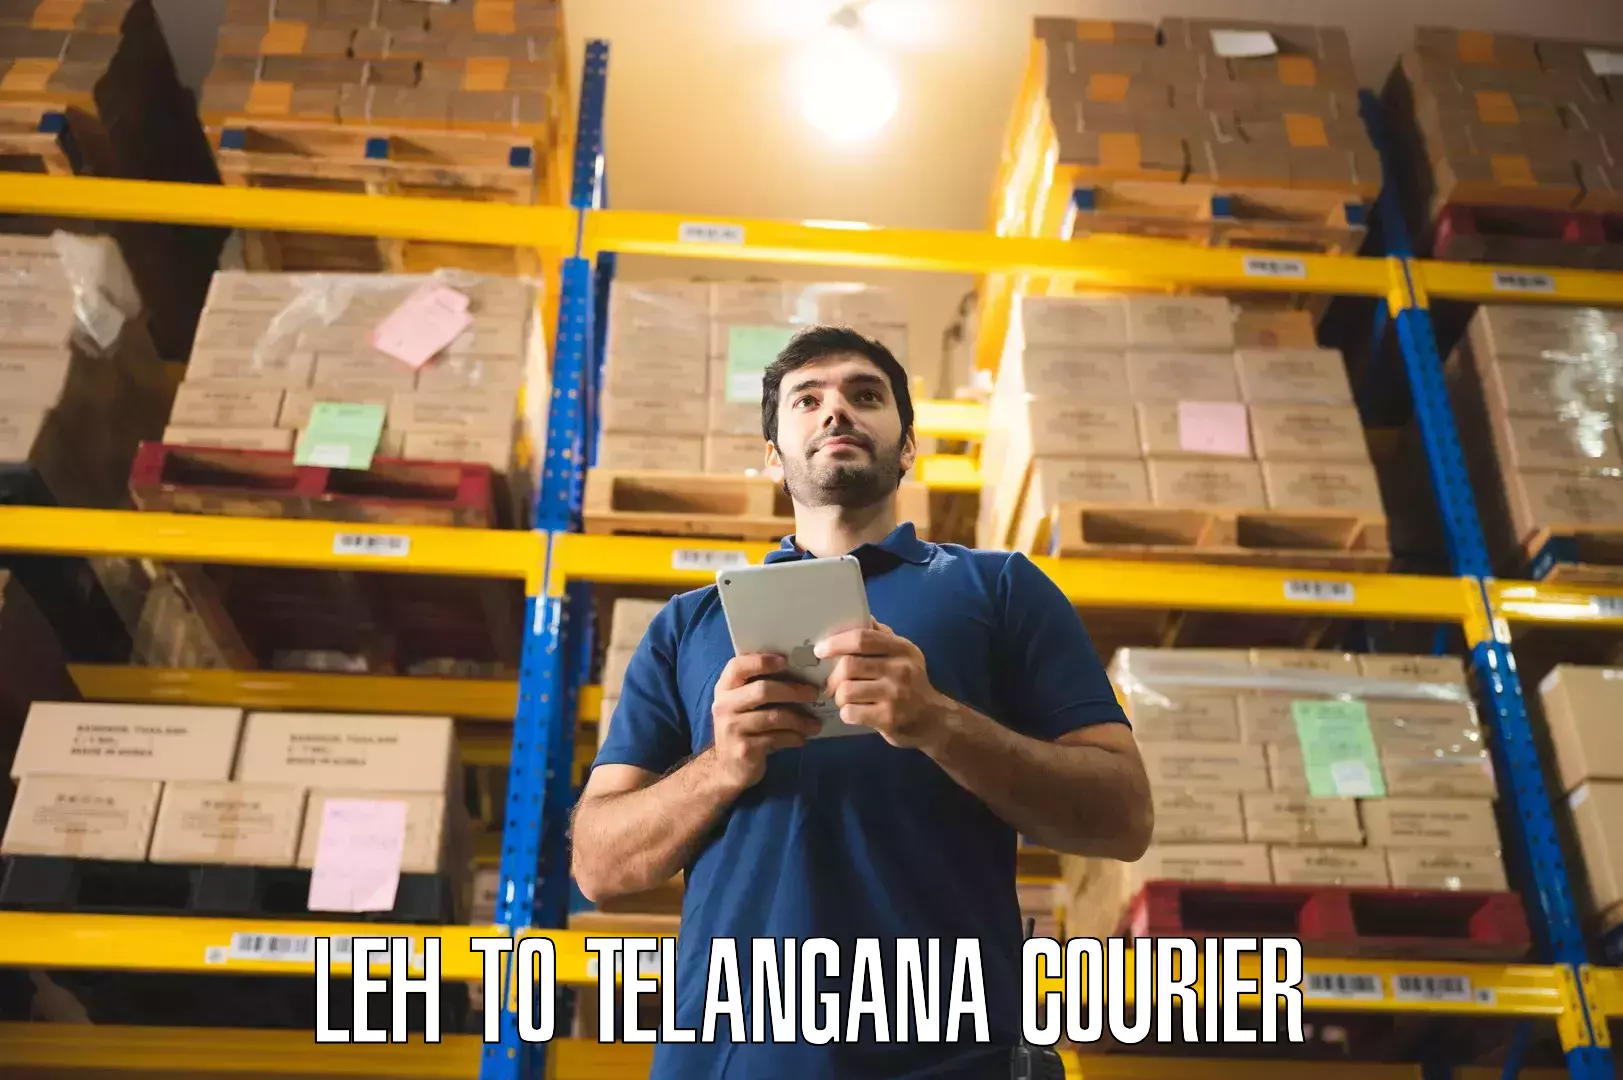 Furniture transport solutions Leh to Telangana